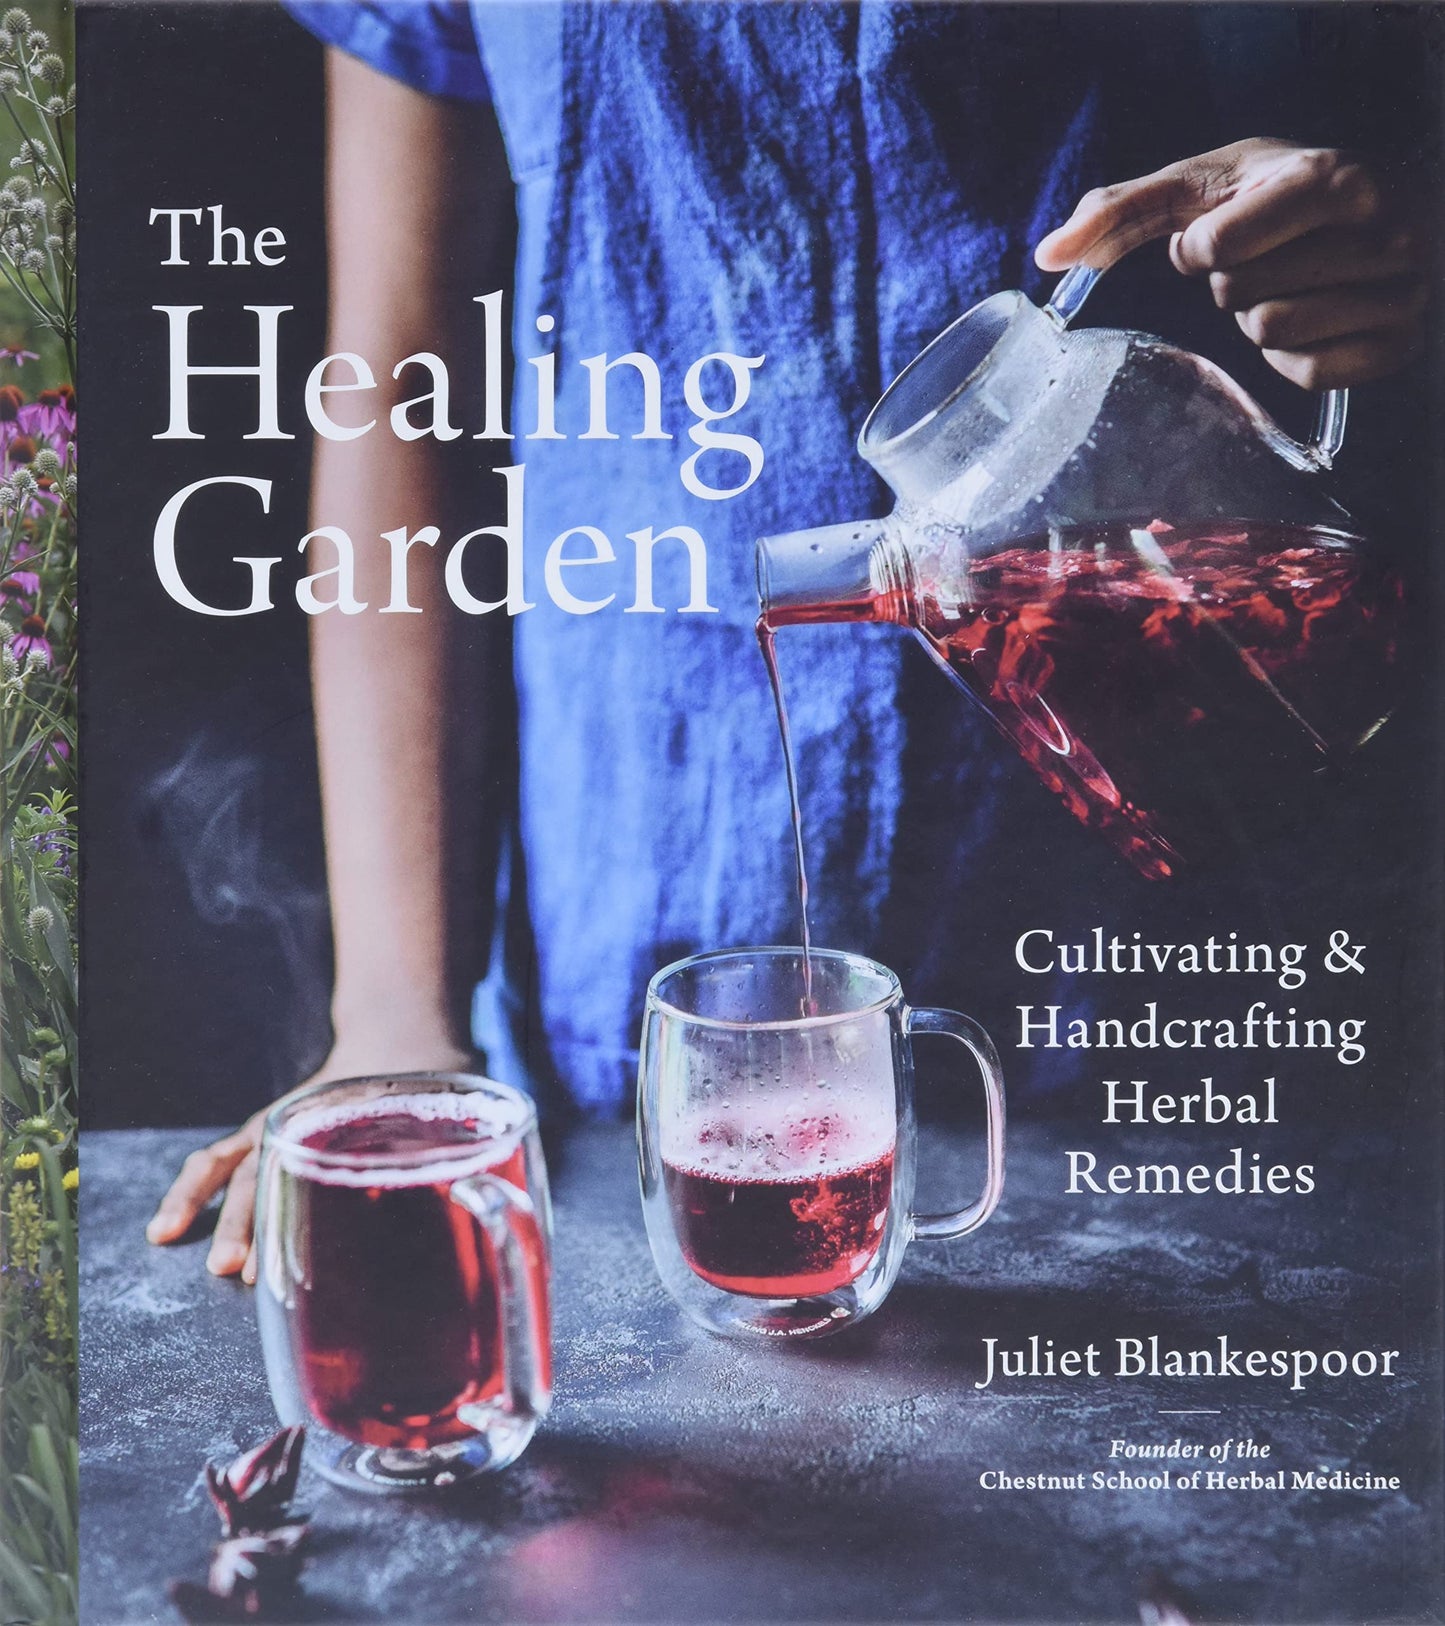 The Healing Garden, by Juliet Blankespoor